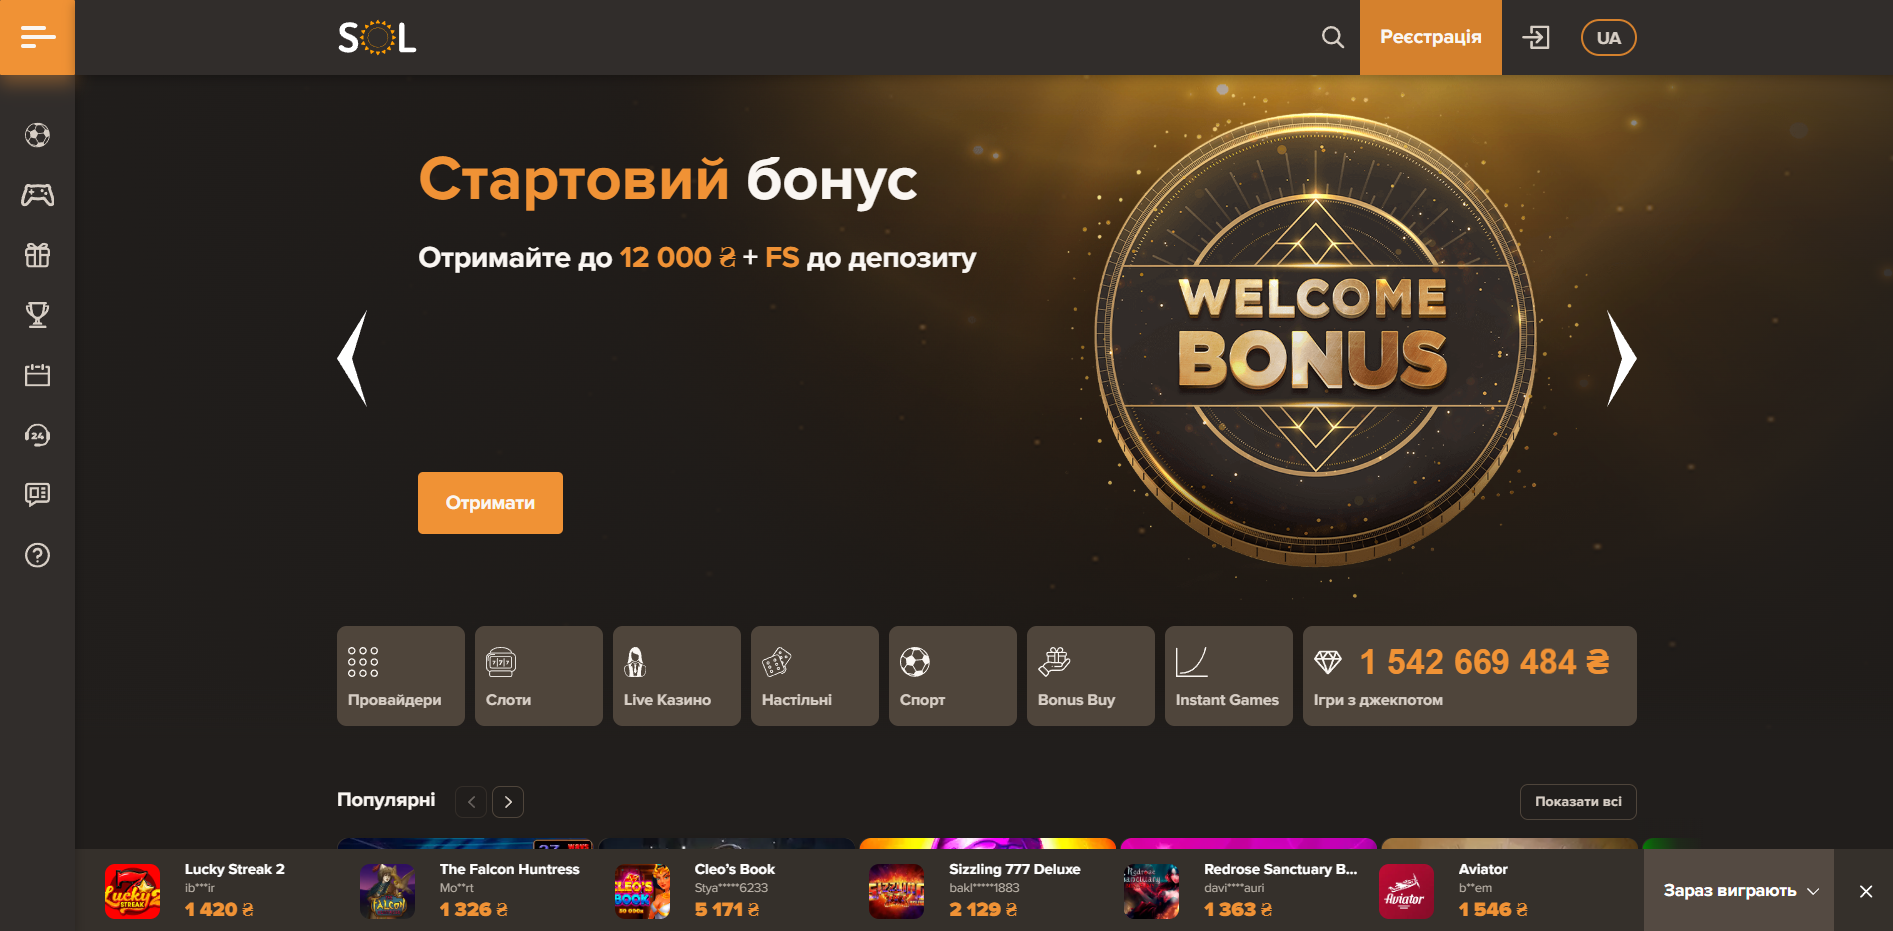 Дизайн сайту Sol Casino